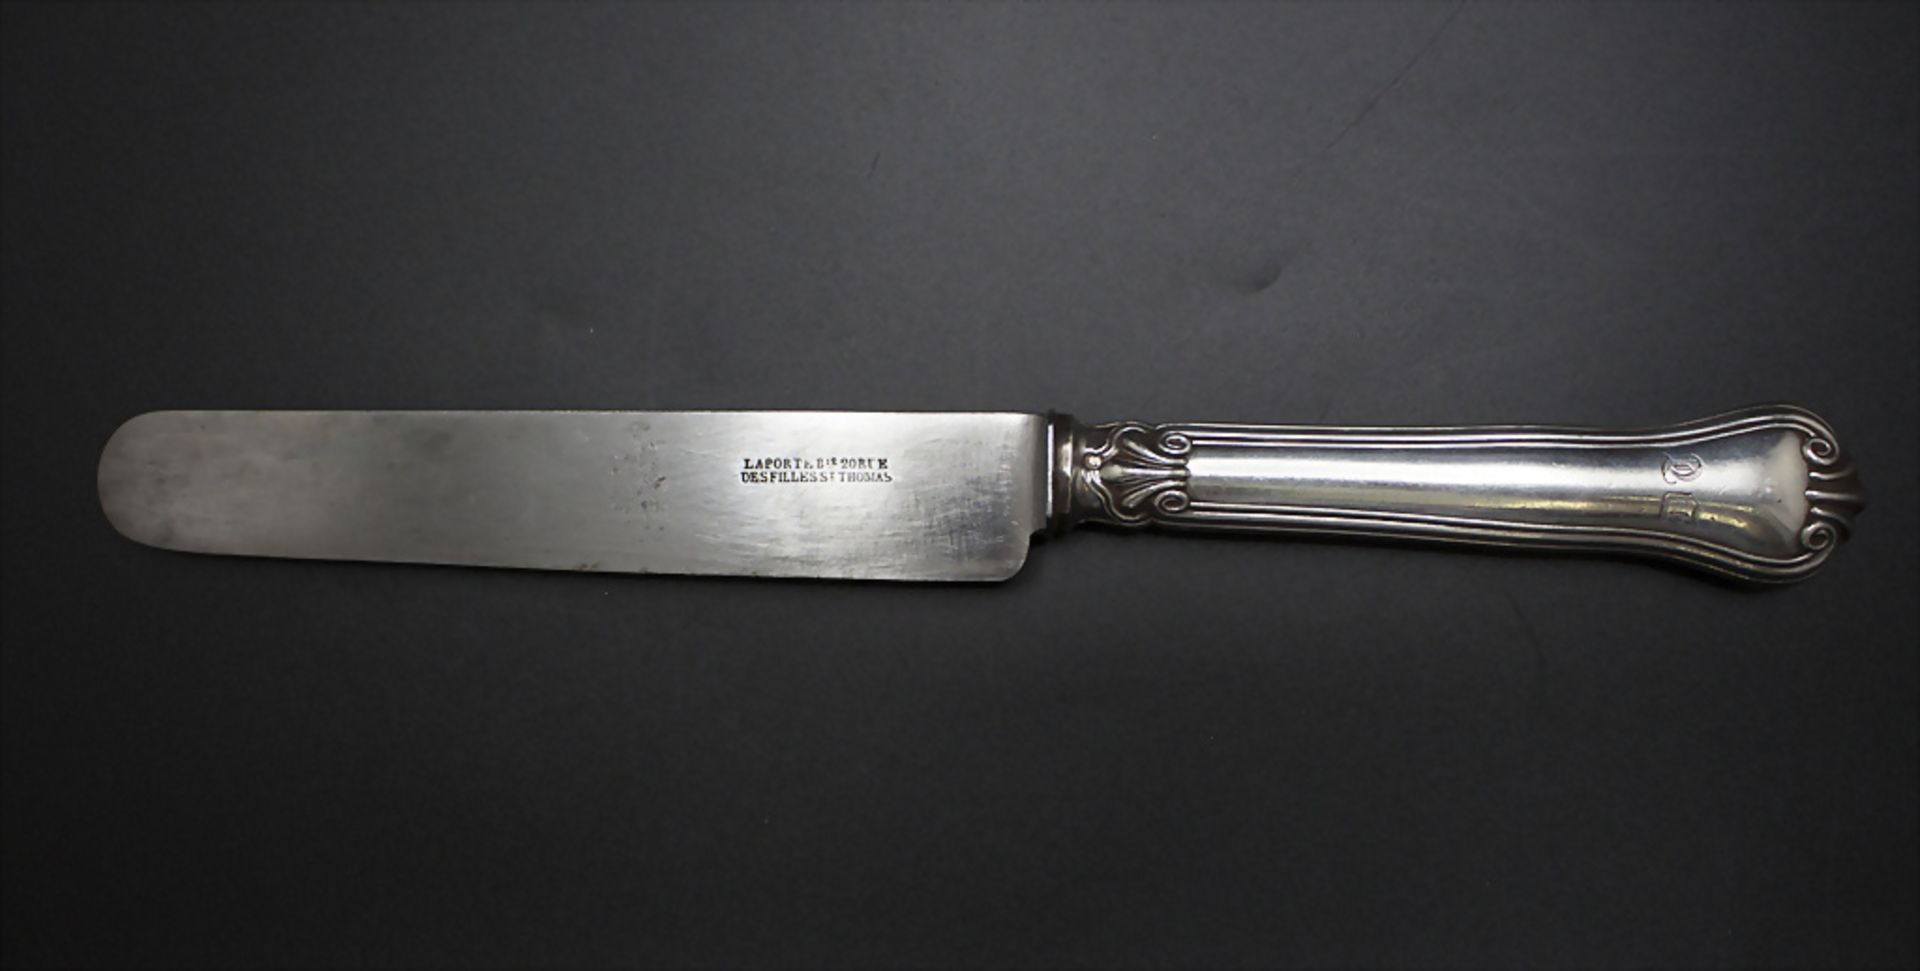 12 Messer / 12 knives, Prudent Quitte u. Dominique Laporte, Paris, um 1853-1882 - Image 2 of 4